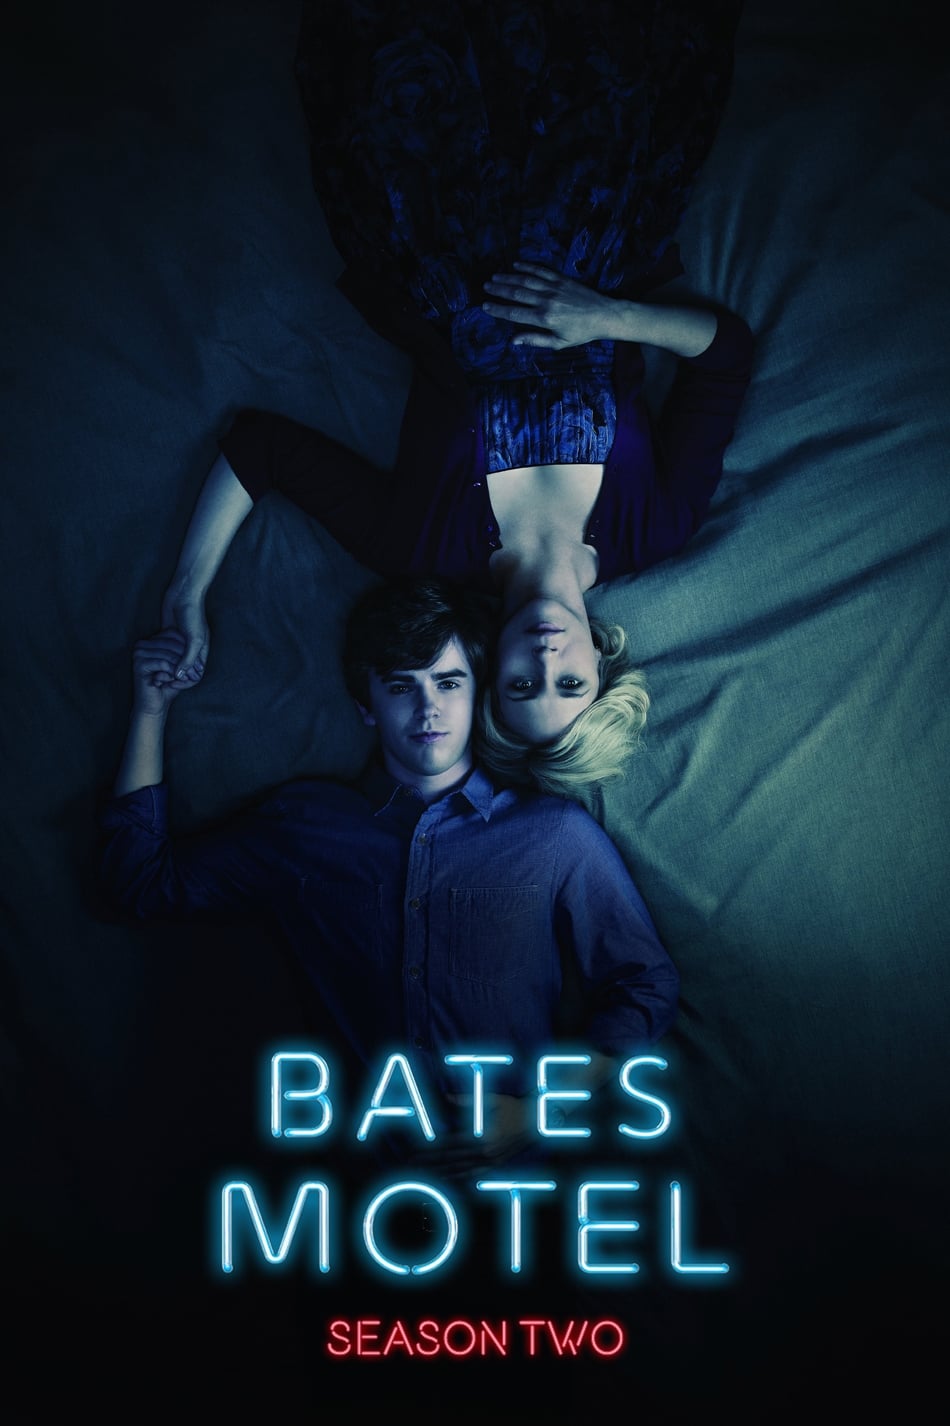 ดูหนังออนไลน์ฟรี Bates Motel (2014) Season 2 ซับไทย EP 8 เบส โมเทล ปี2 ตอนที่8 (ซับไทย)